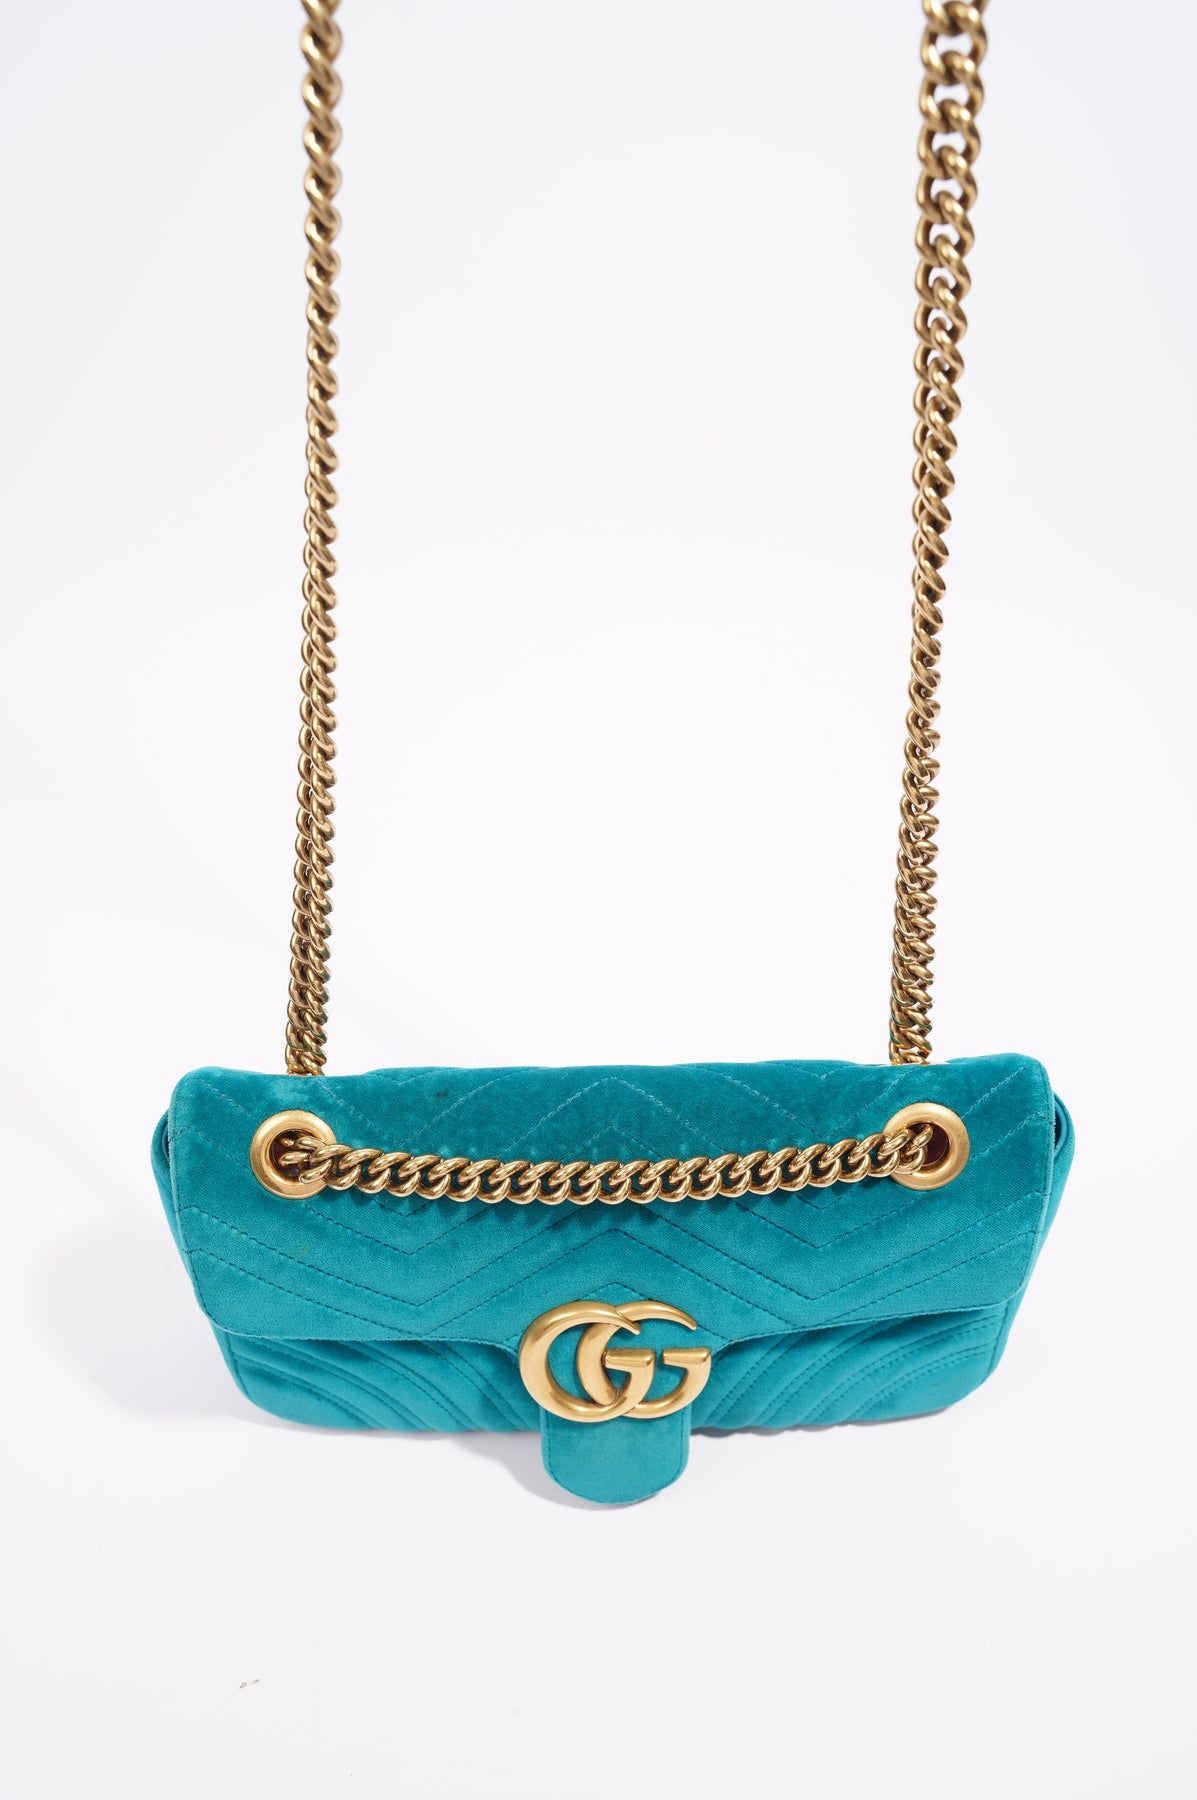 GG Marmont Flap velvet handbag